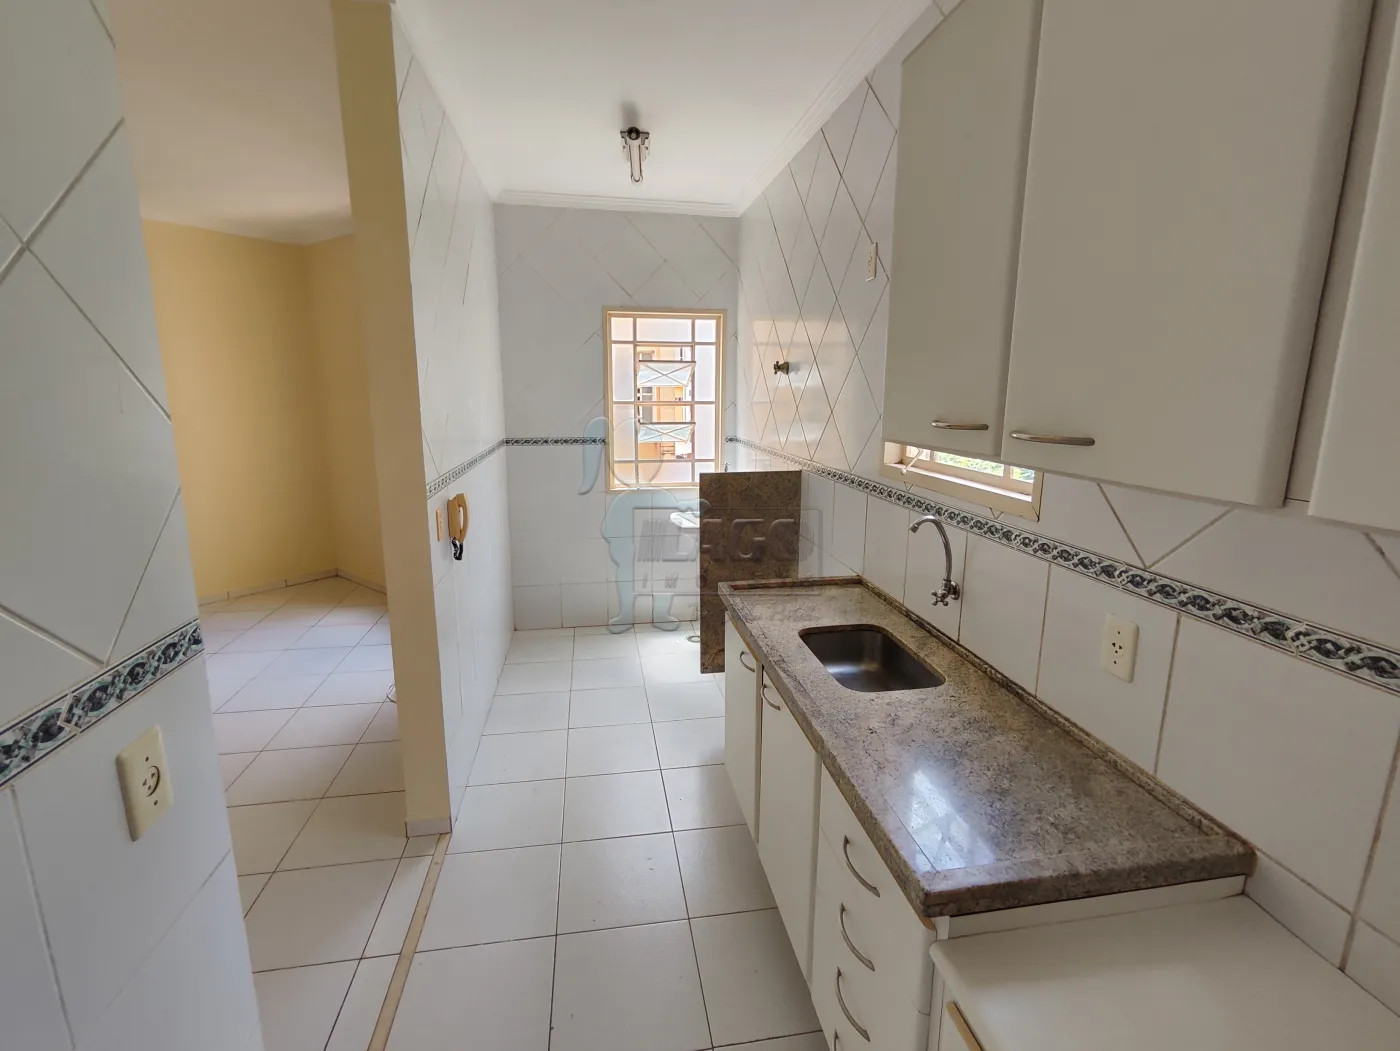 Alugar Apartamentos / Padrão em Ribeirão Preto R$ 980,00 - Foto 6